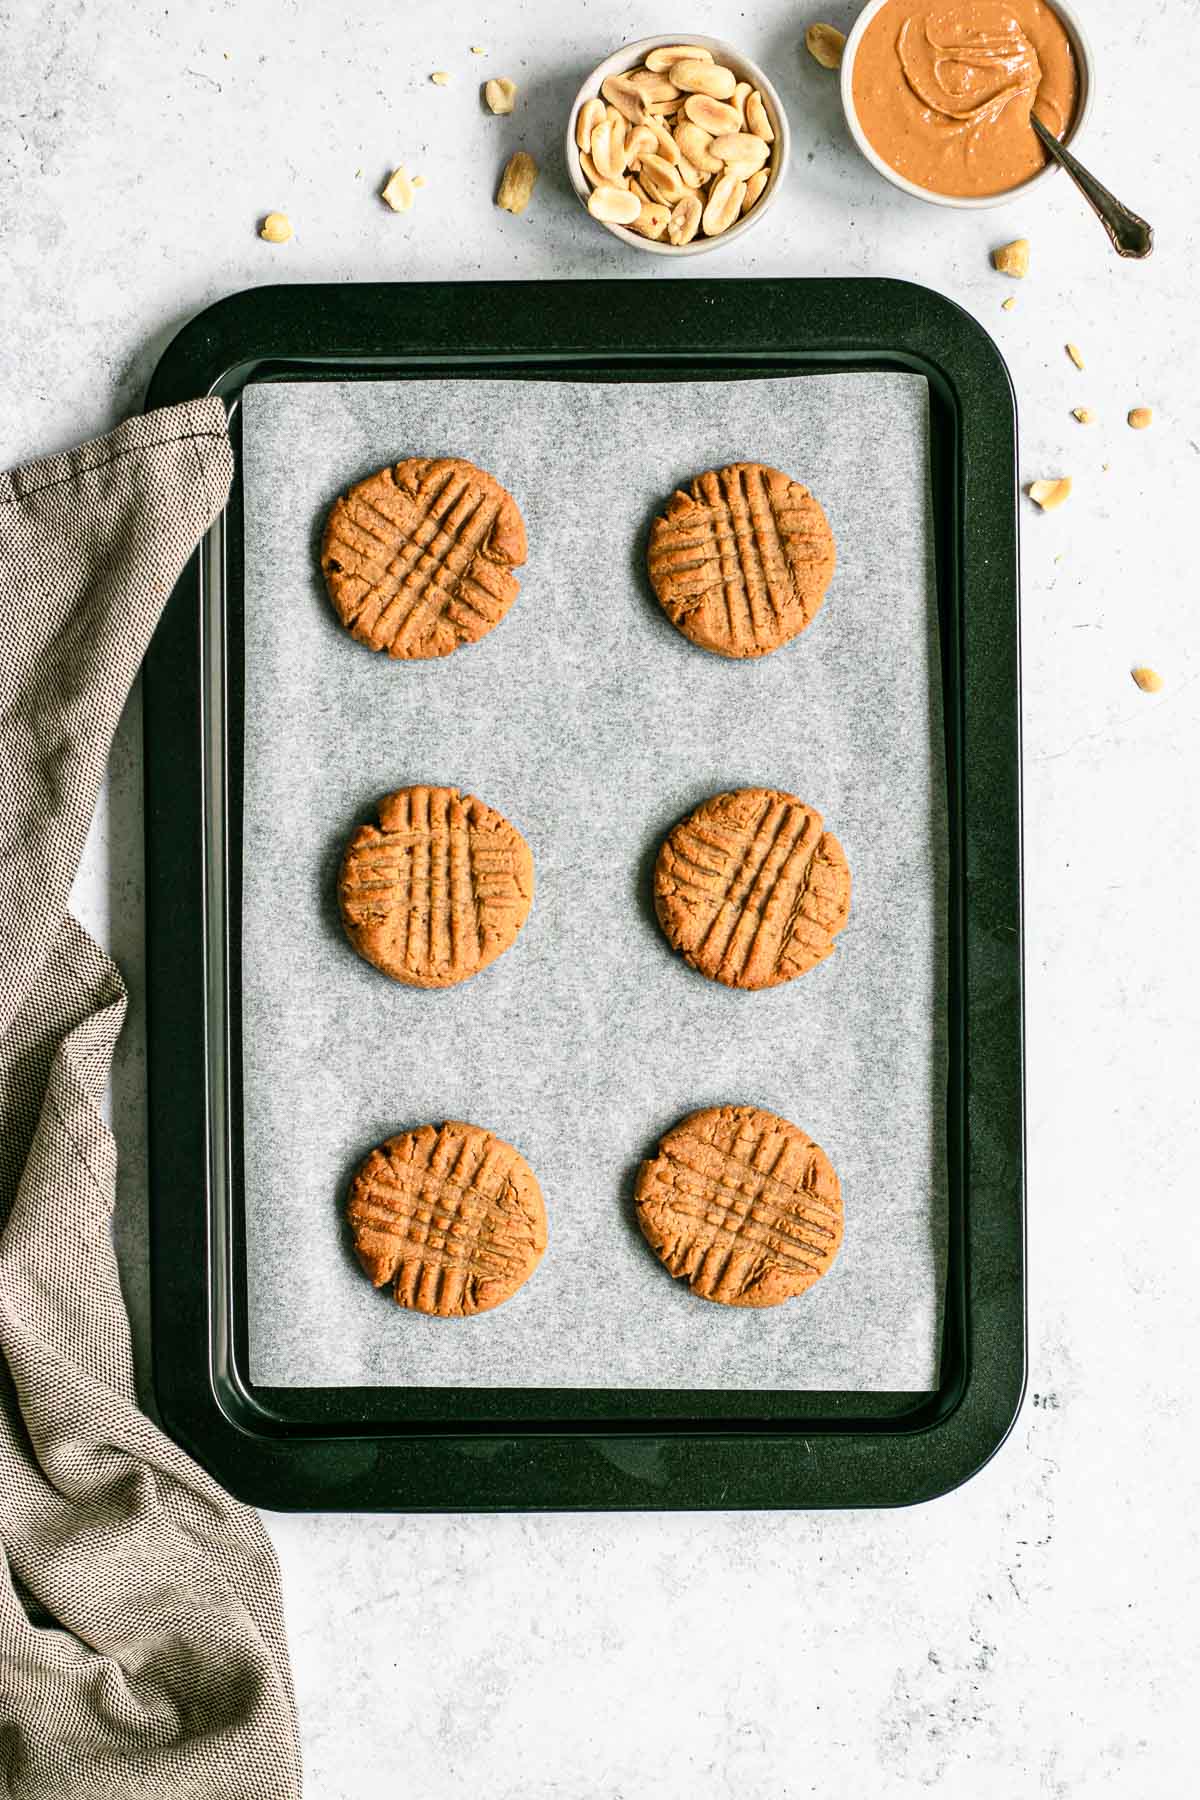 Flourless Peanut Butter Cookies on sheet pan